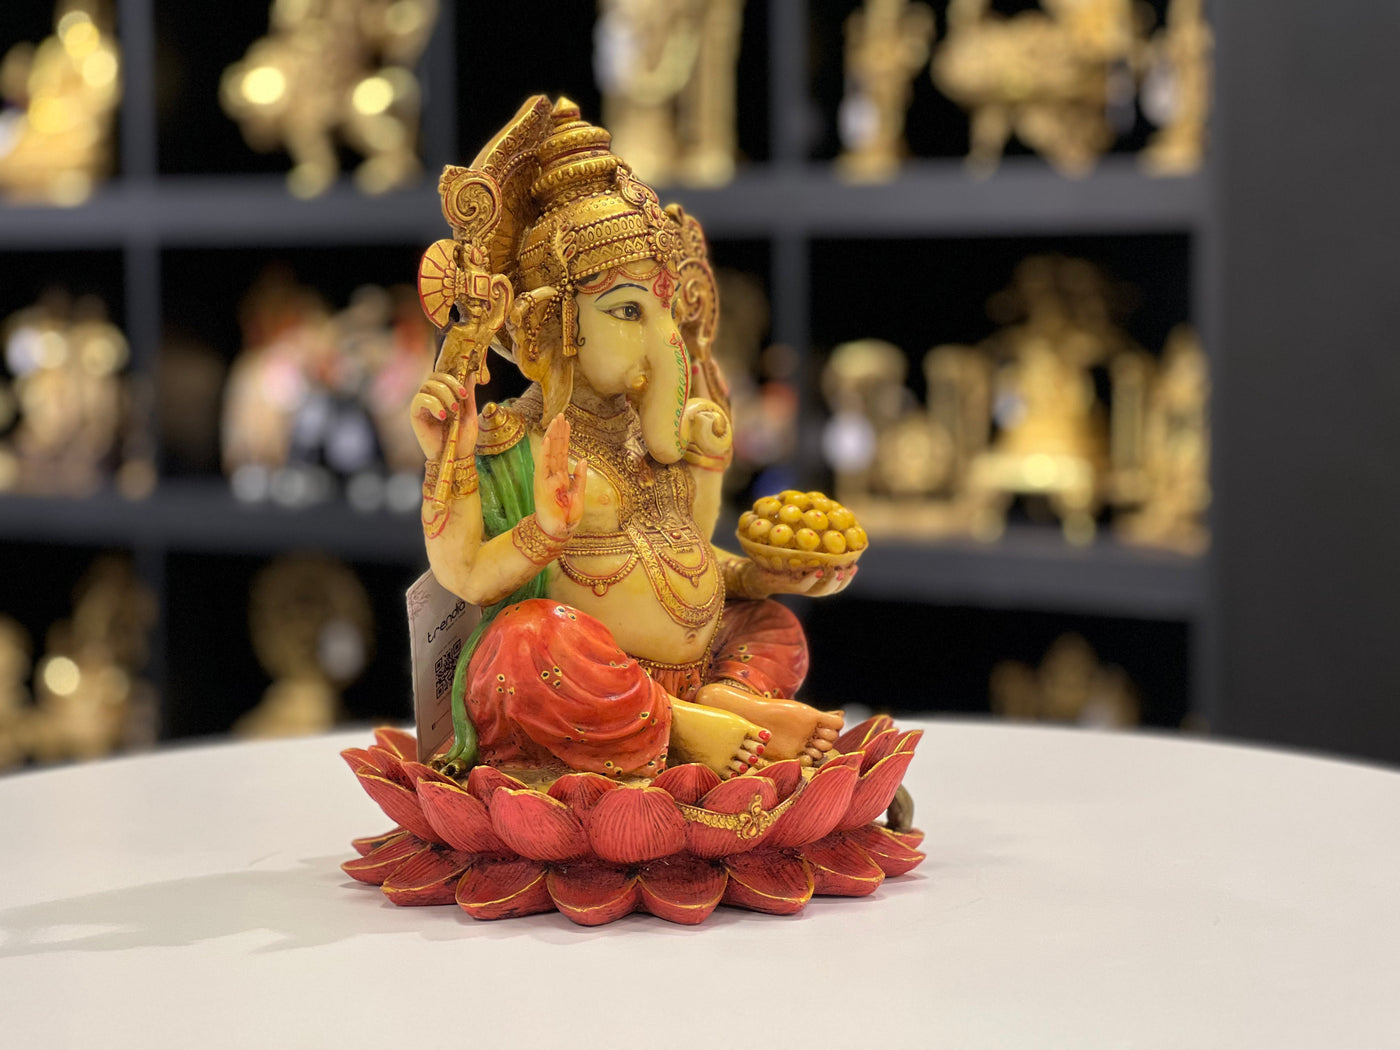 Ganesh Idol For Pooja Decor 12 Inch By Trendia Decor